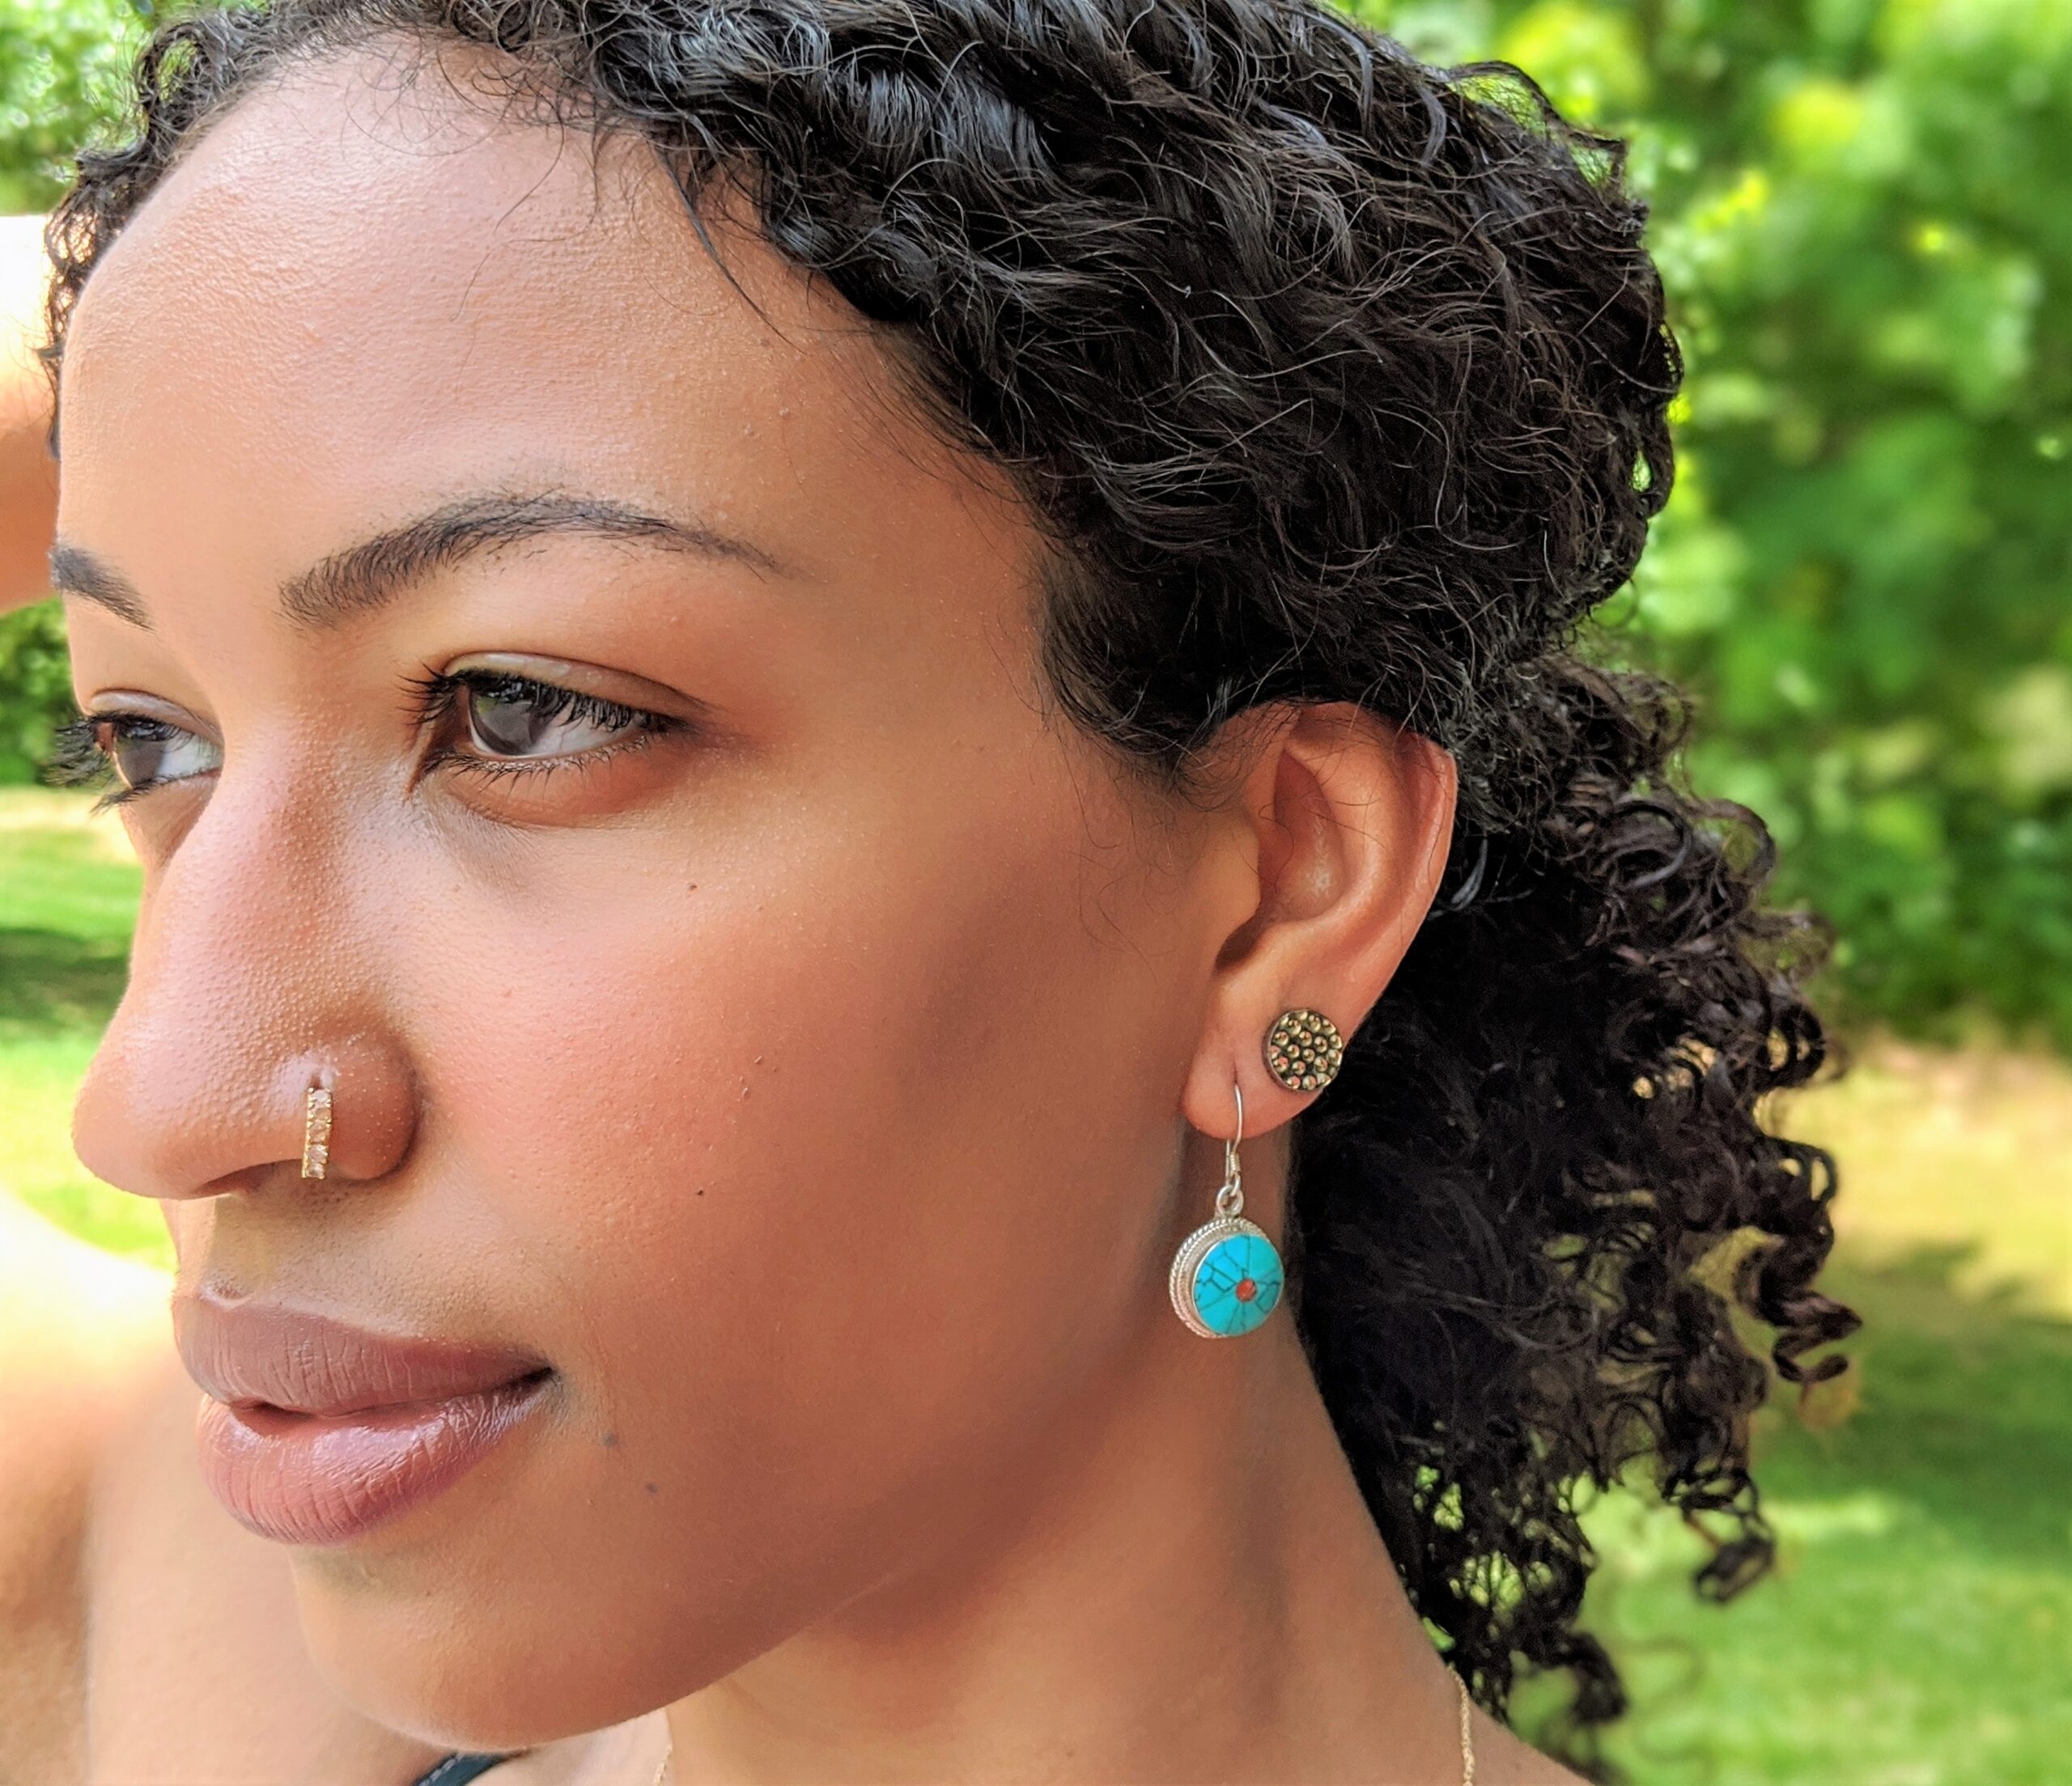 Girl wearing turquoise earring